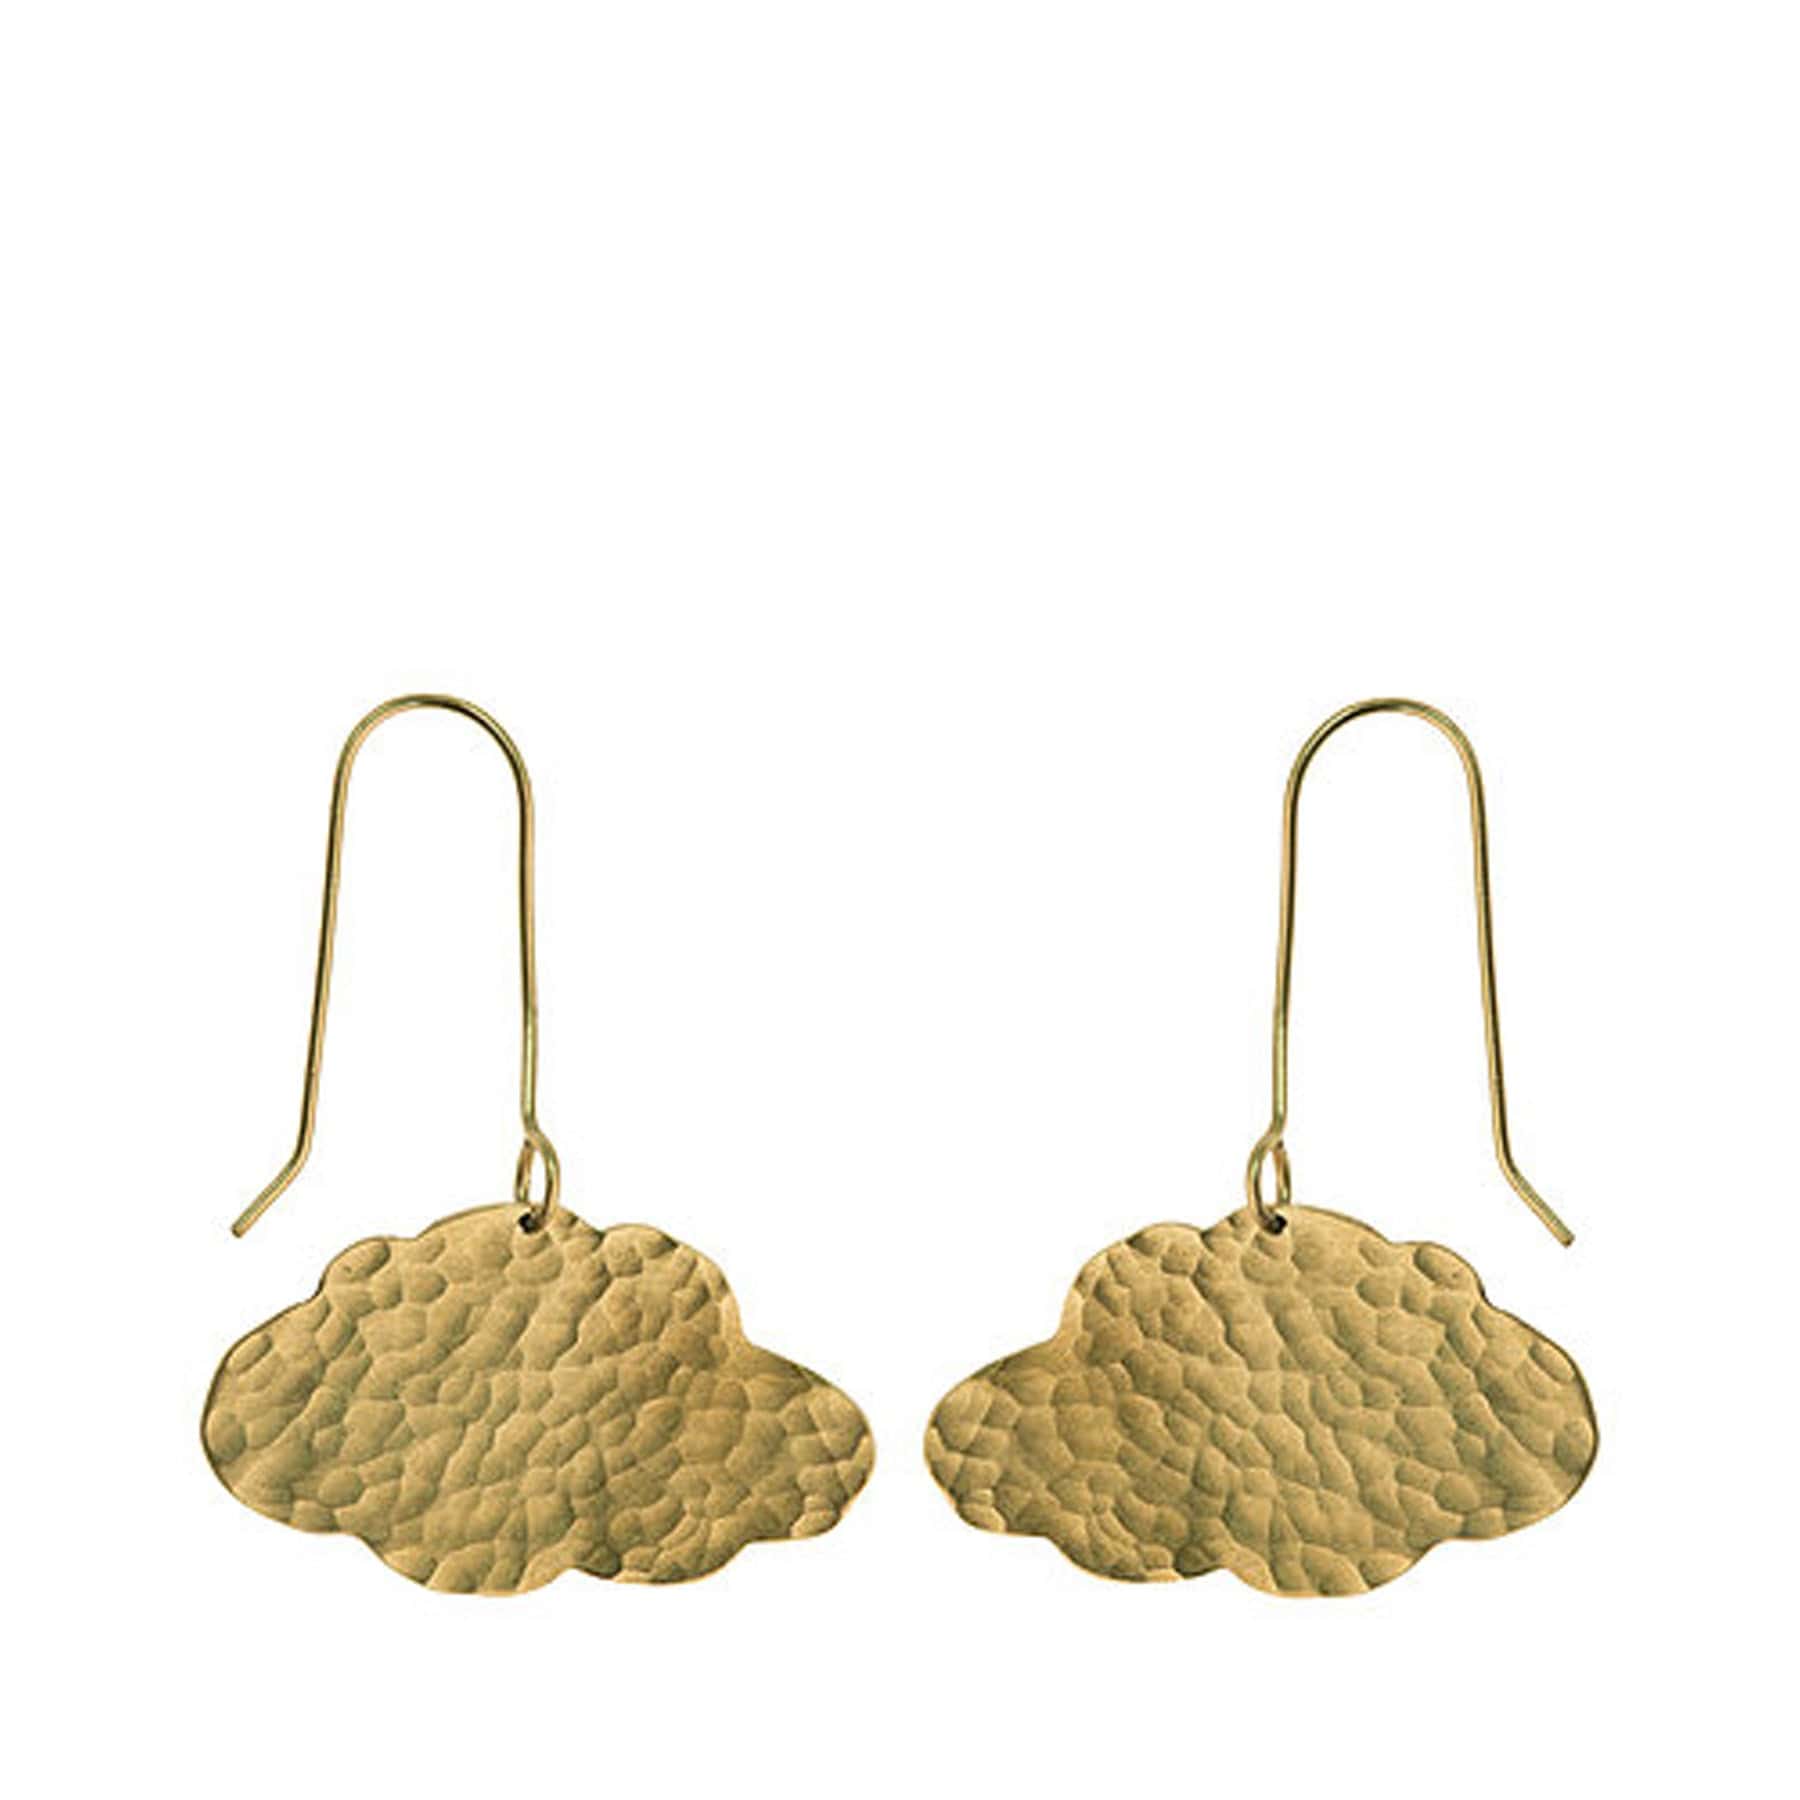 Brass cloud earrings